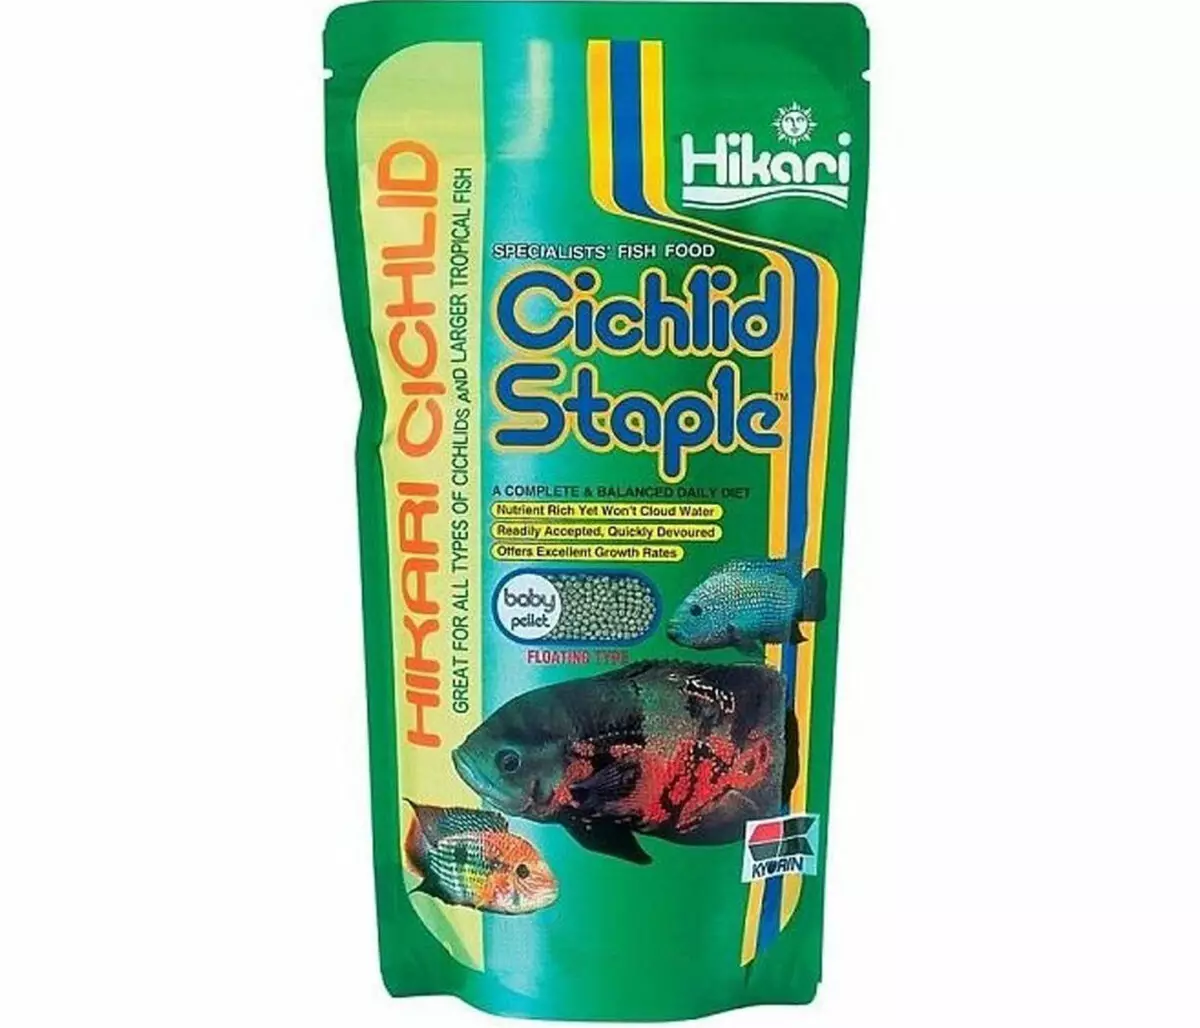 Chikafu cheAquarium Hove: Sarudza Chikafu Chekudya uye nehove yechando ichidya kumba. Chii chekupa furita mu aquarium? 11501_30